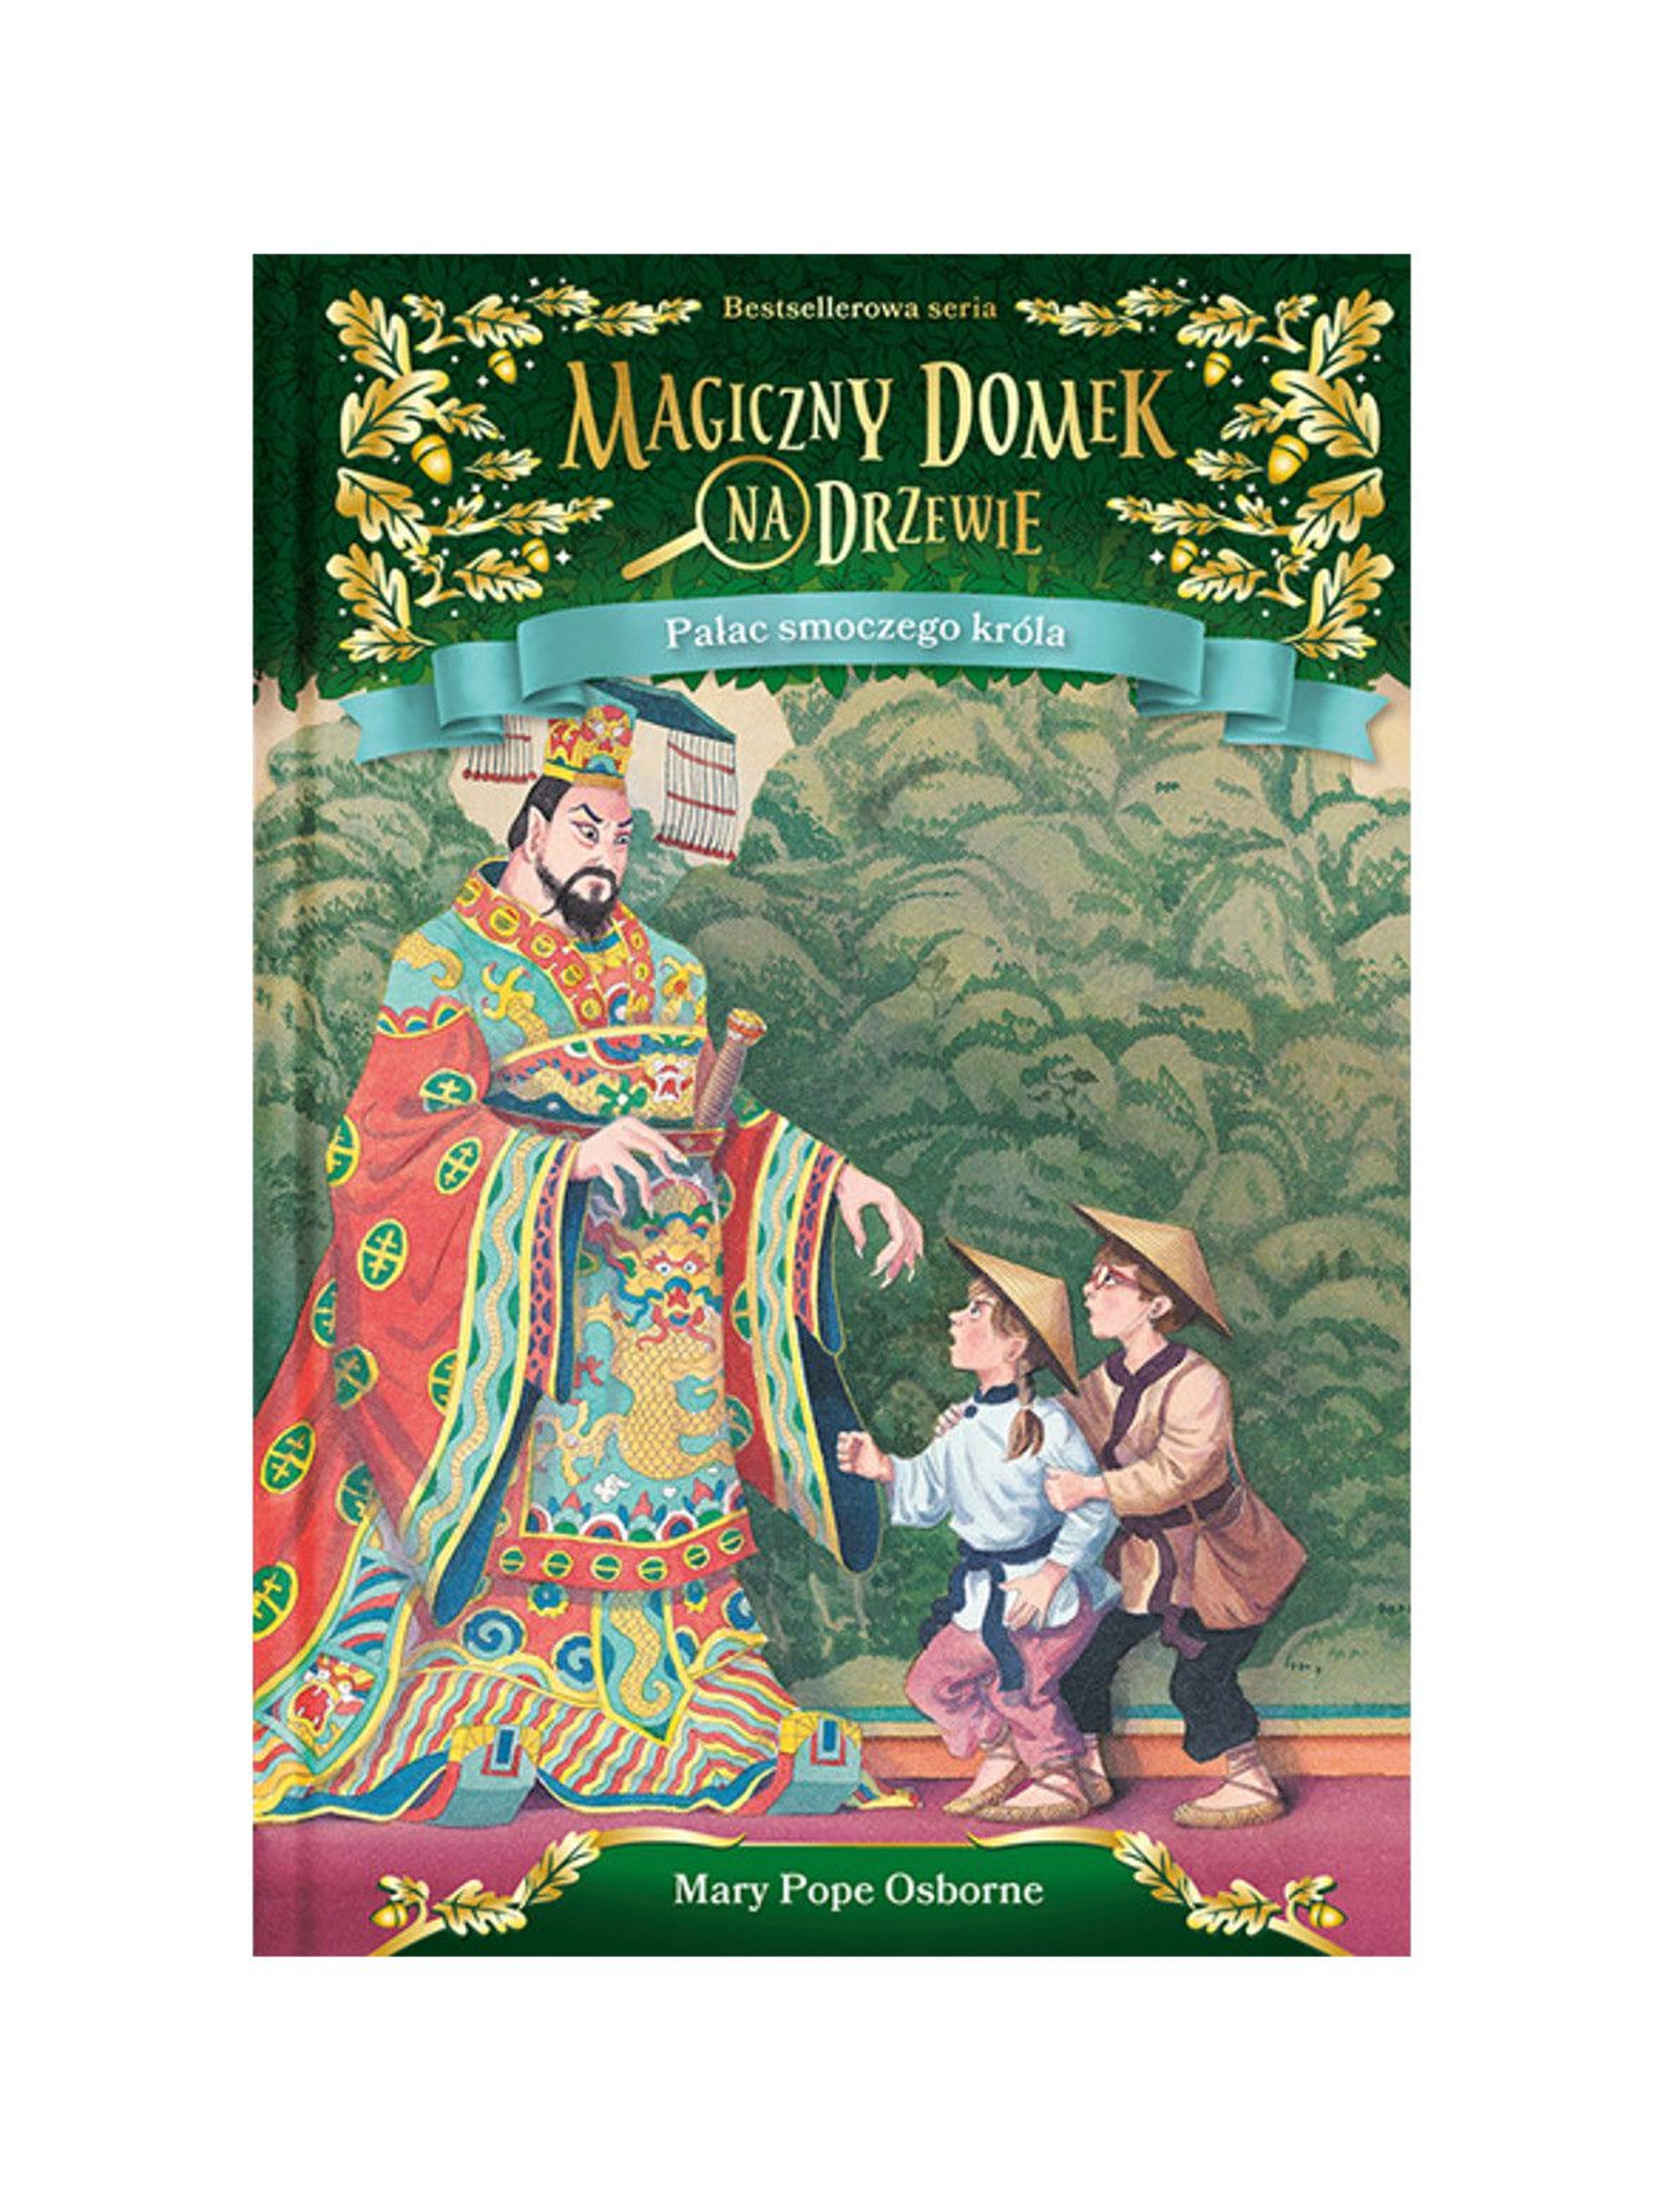 Książka "Magiczny domek na drzewie.Pałac smoczego króla"- Mary Pope Osborne